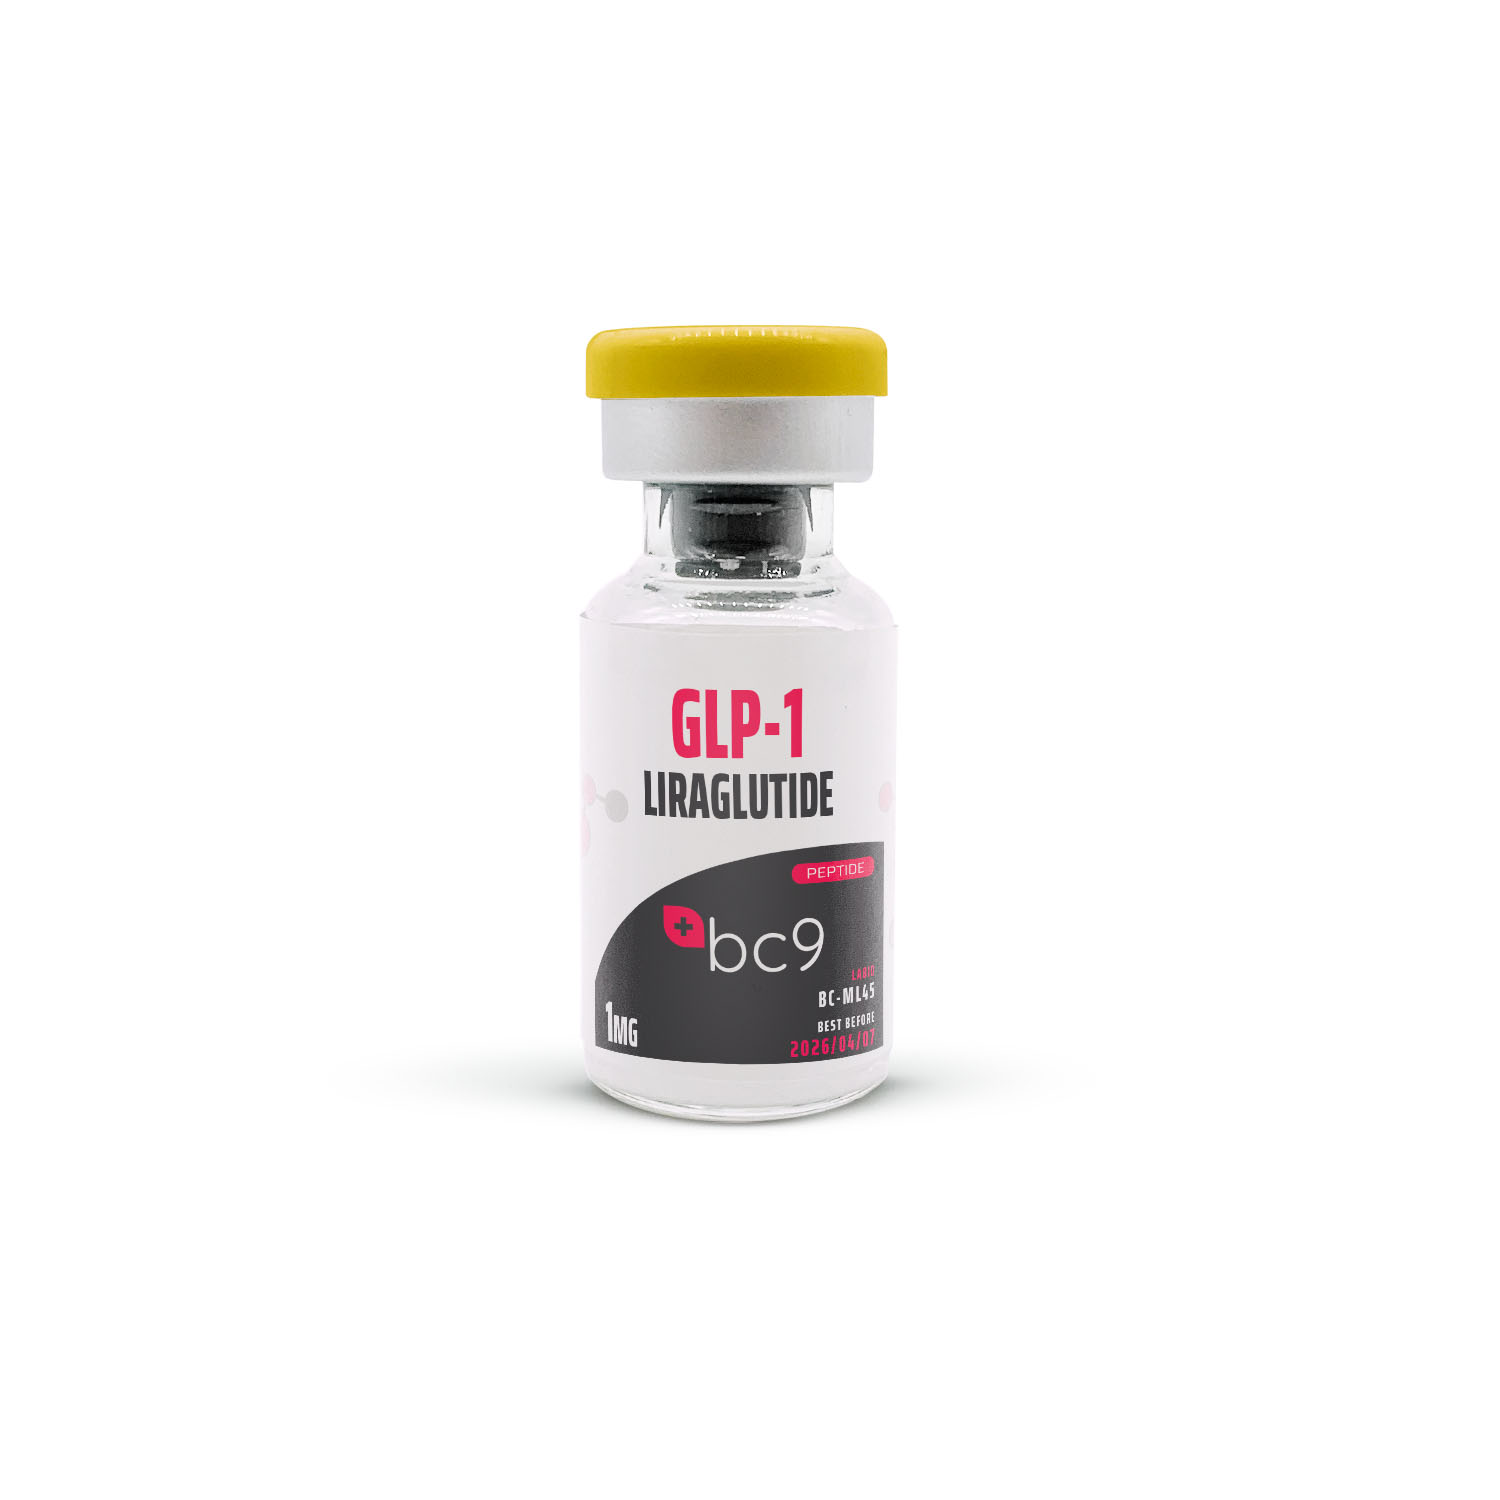 GLP-1 (Liraglutide) Peptide for Sale | BC9.org